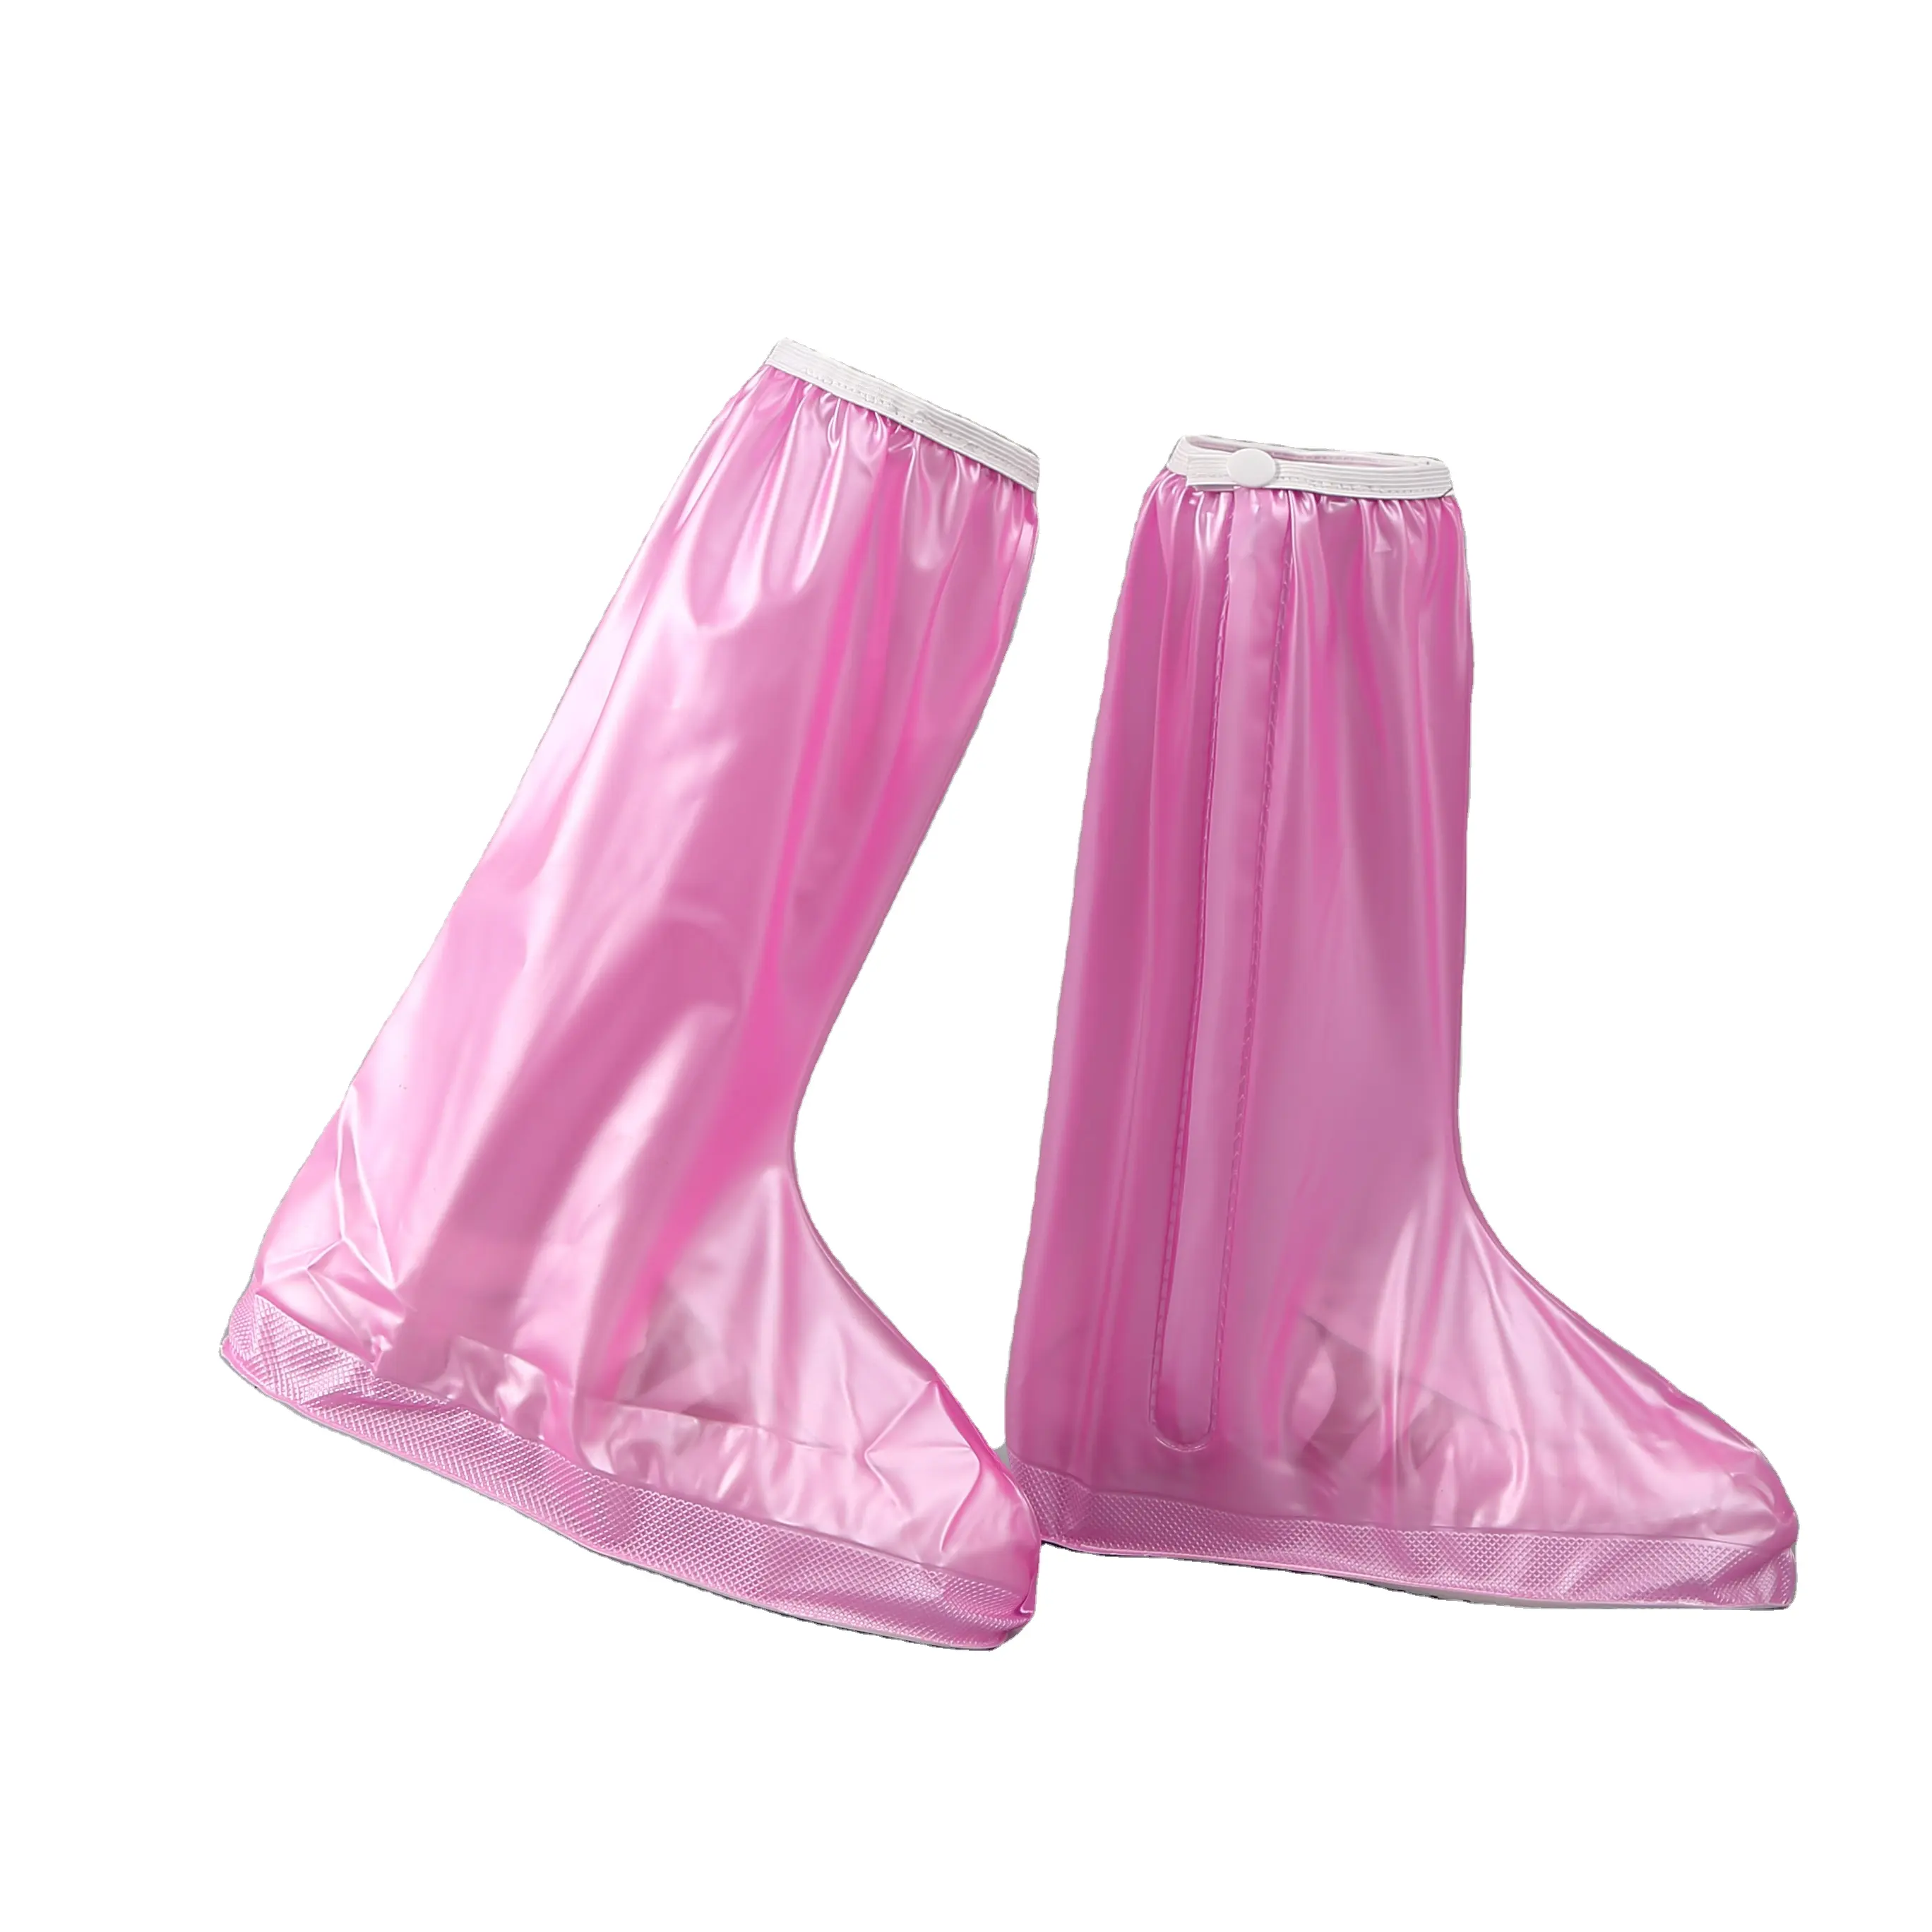 Бахилы на обувь ПВХ от воды и грязи LVR 819A XL 41-42 29.5 см (Pink)